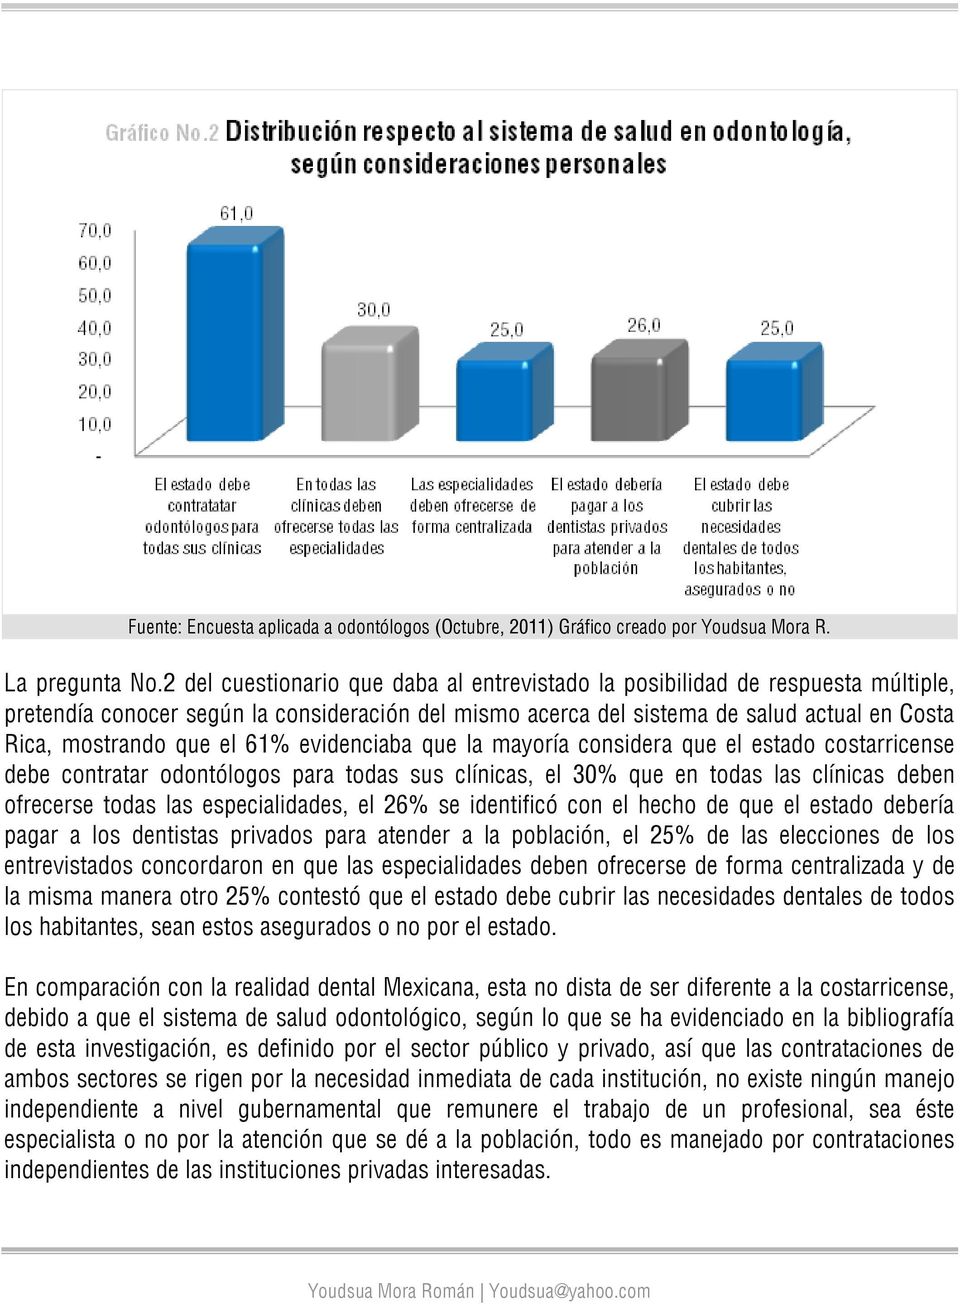 61% evidenciaba que la mayoría considera que el estado costarricense debe contratar odontólogos para todas sus clínicas, el 30% que en todas las clínicas deben ofrecerse todas las especialidades, el